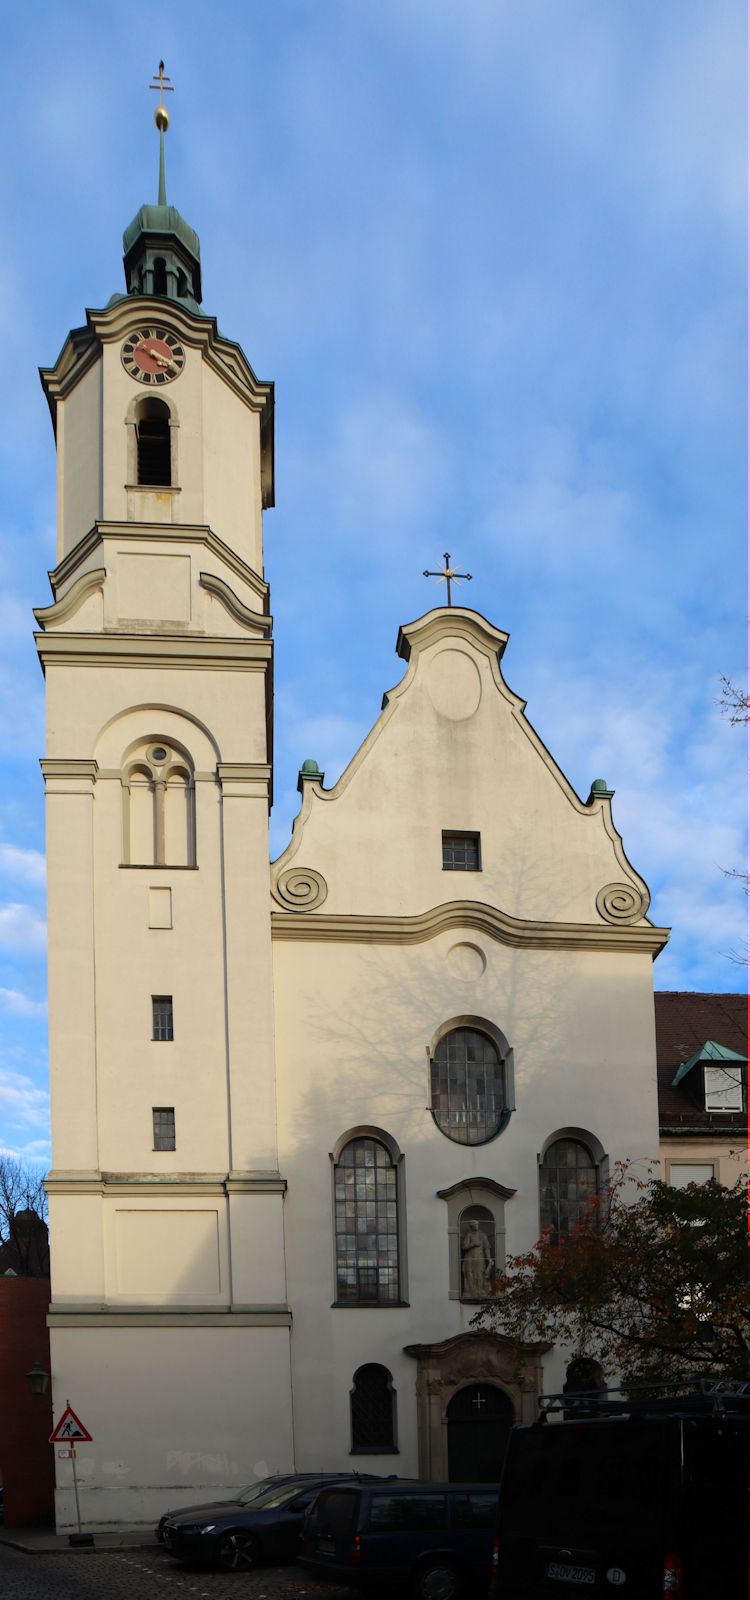 Kirche St. Stephan in Augsburg